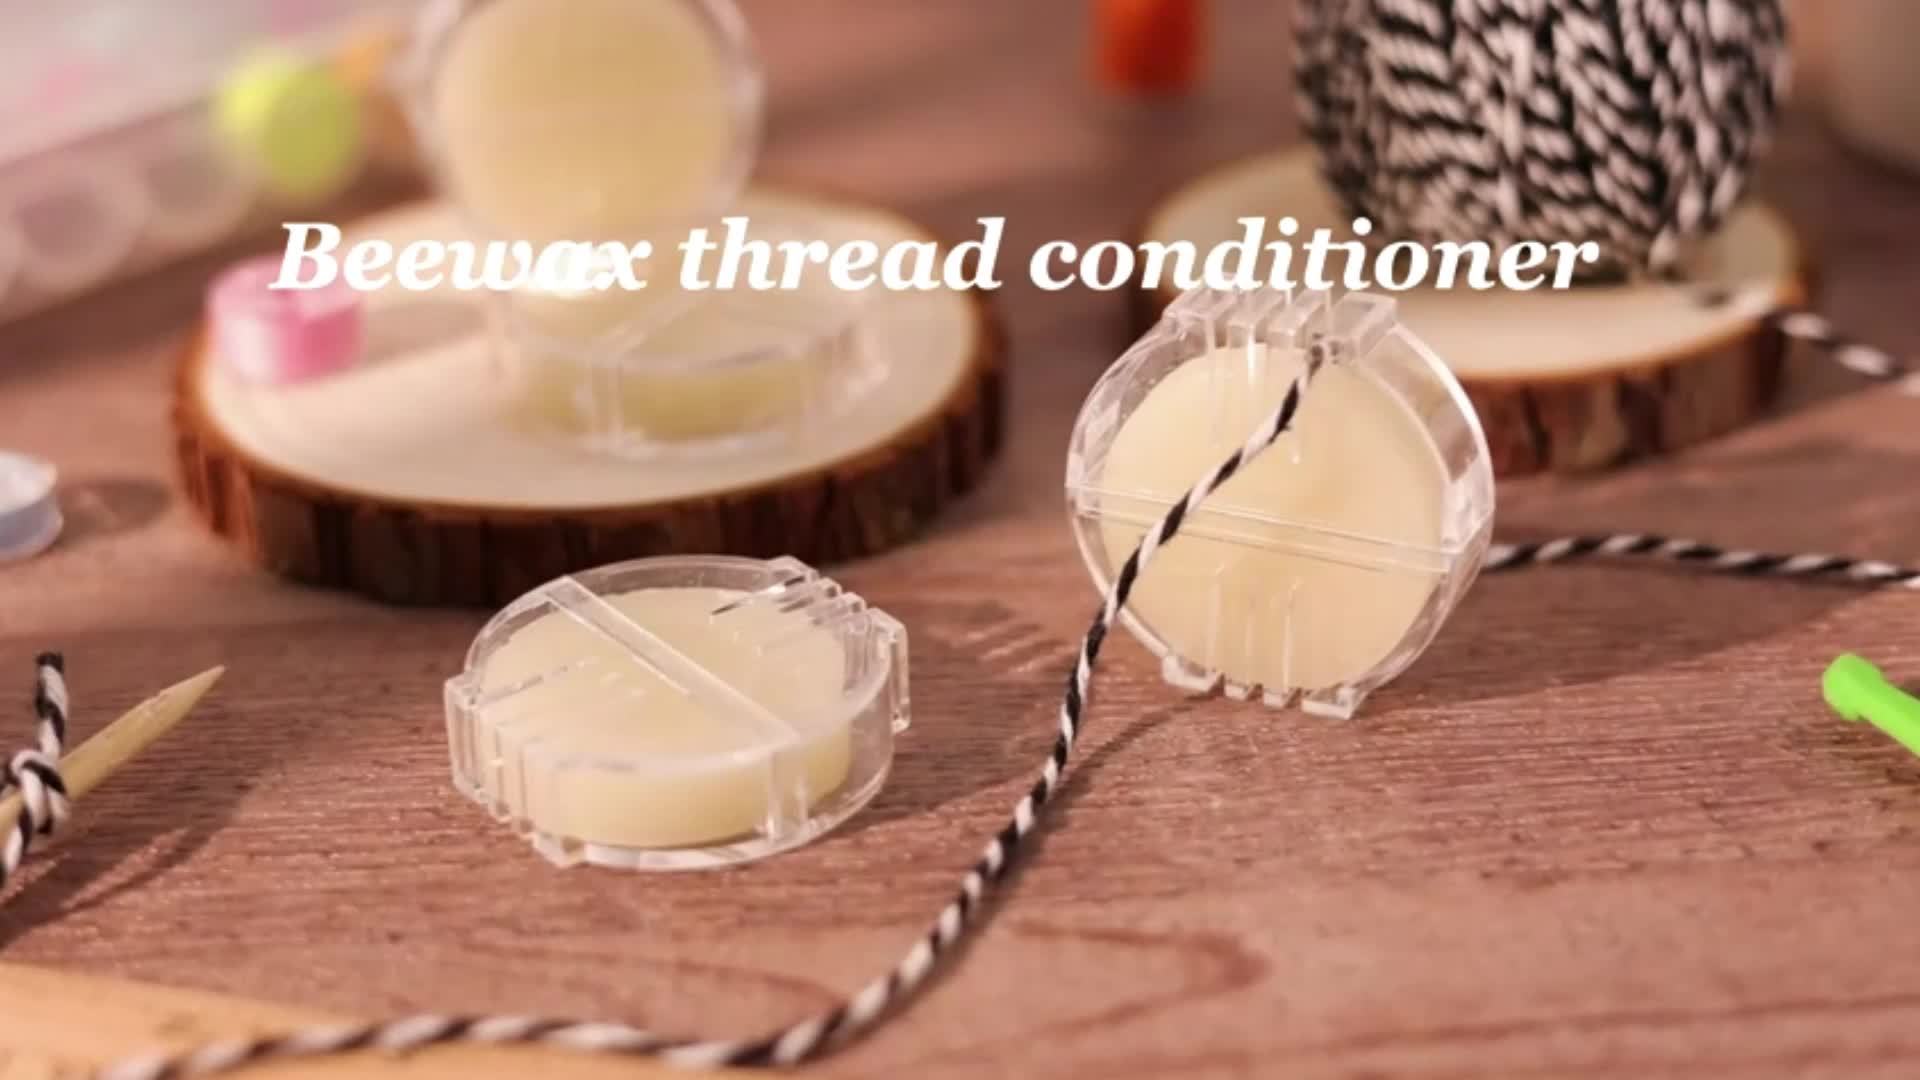  Teaaha 2 PCS Beeswax, Thread Conditioners, Thread Wax